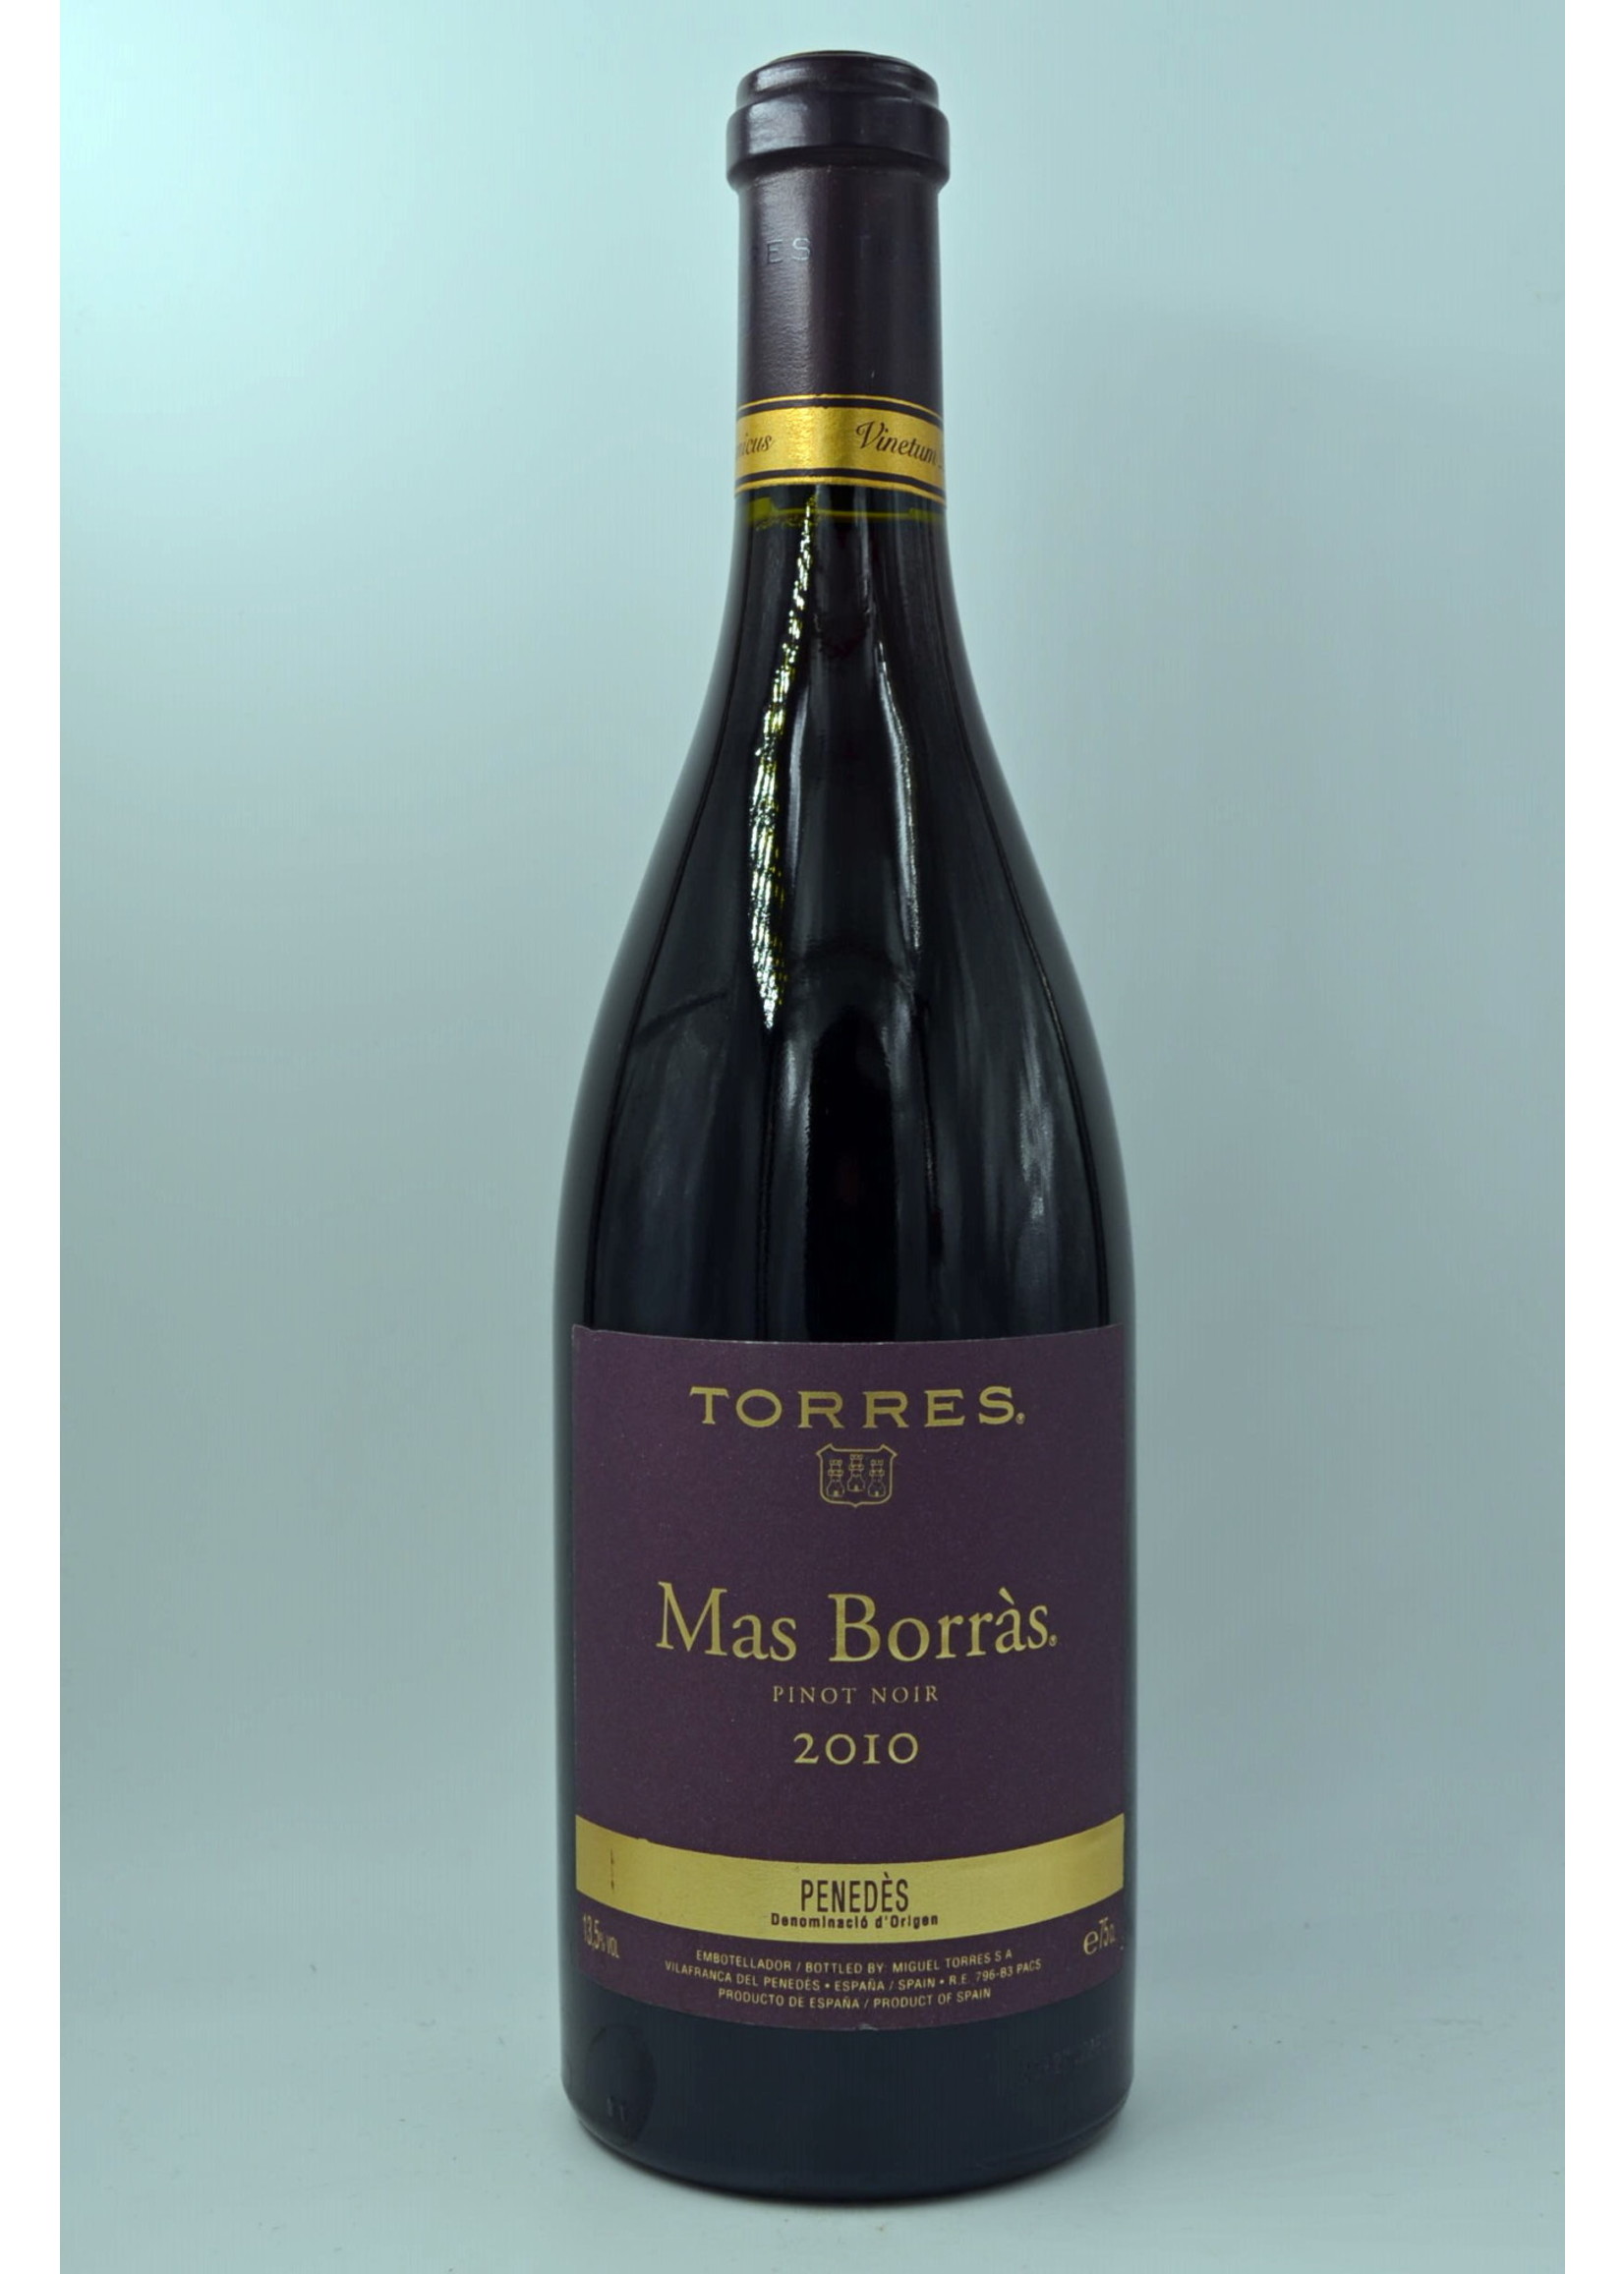 2010 Mas Borras Pinot Noir Torres